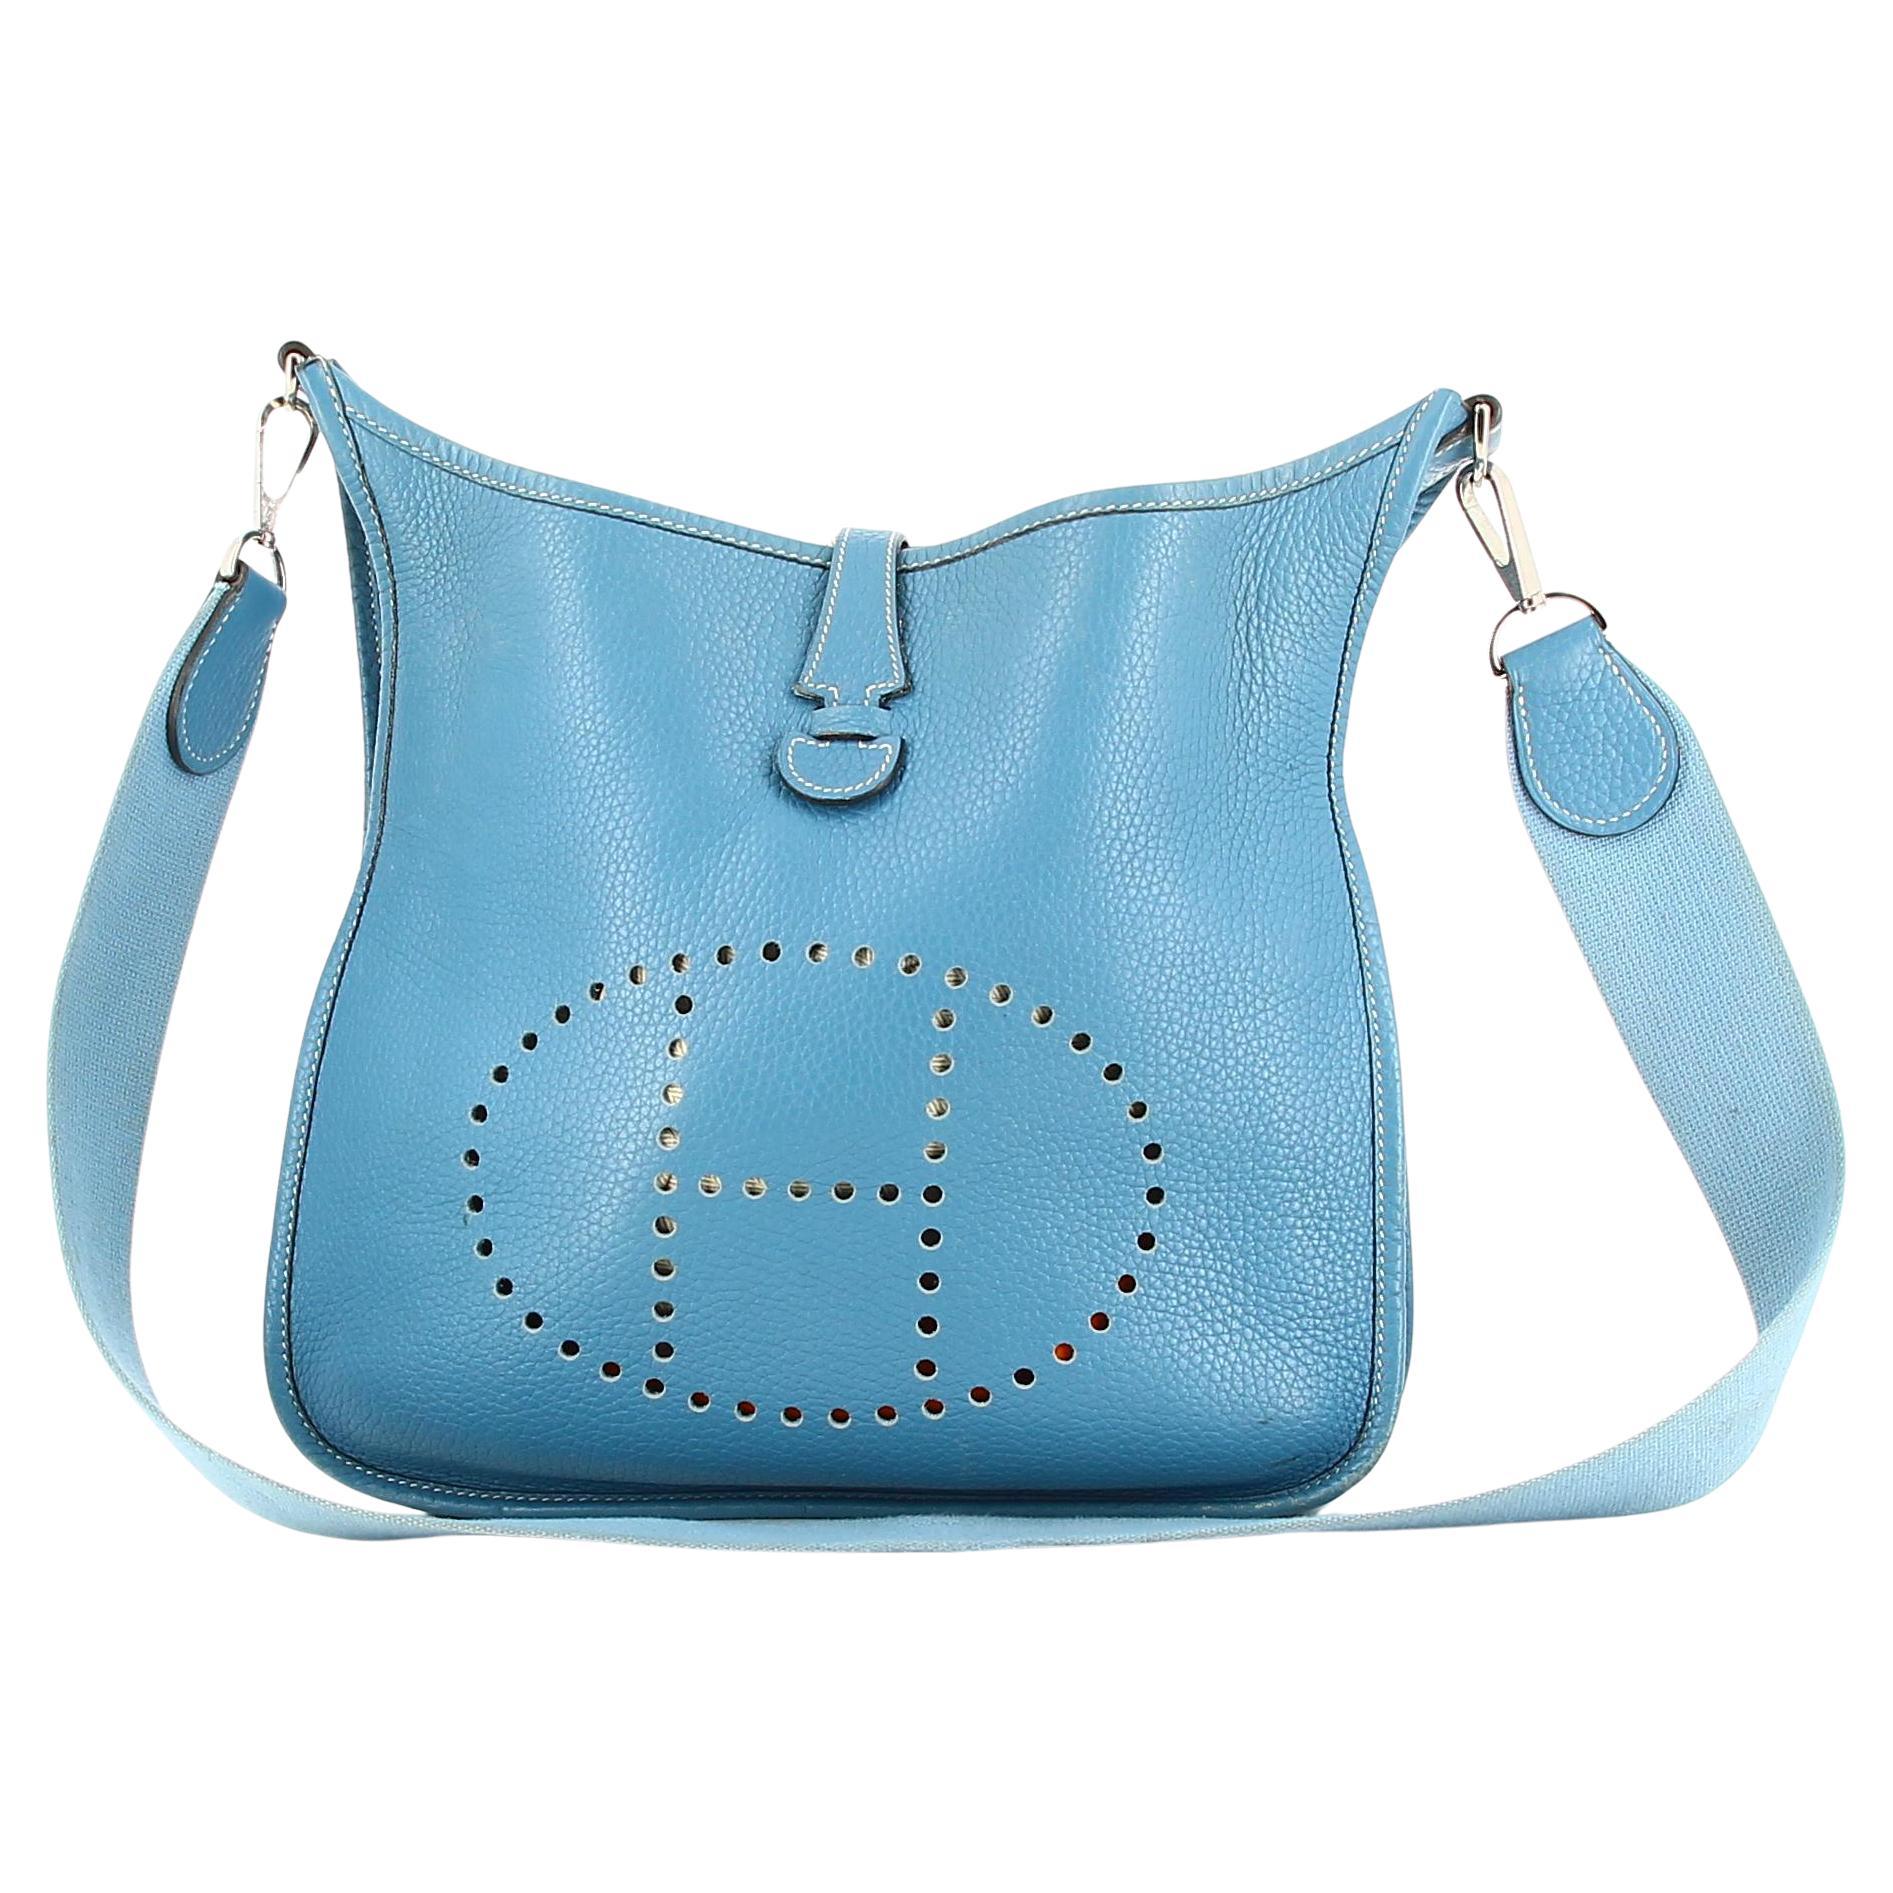 Hermès Blue Evelyne Leather Bag